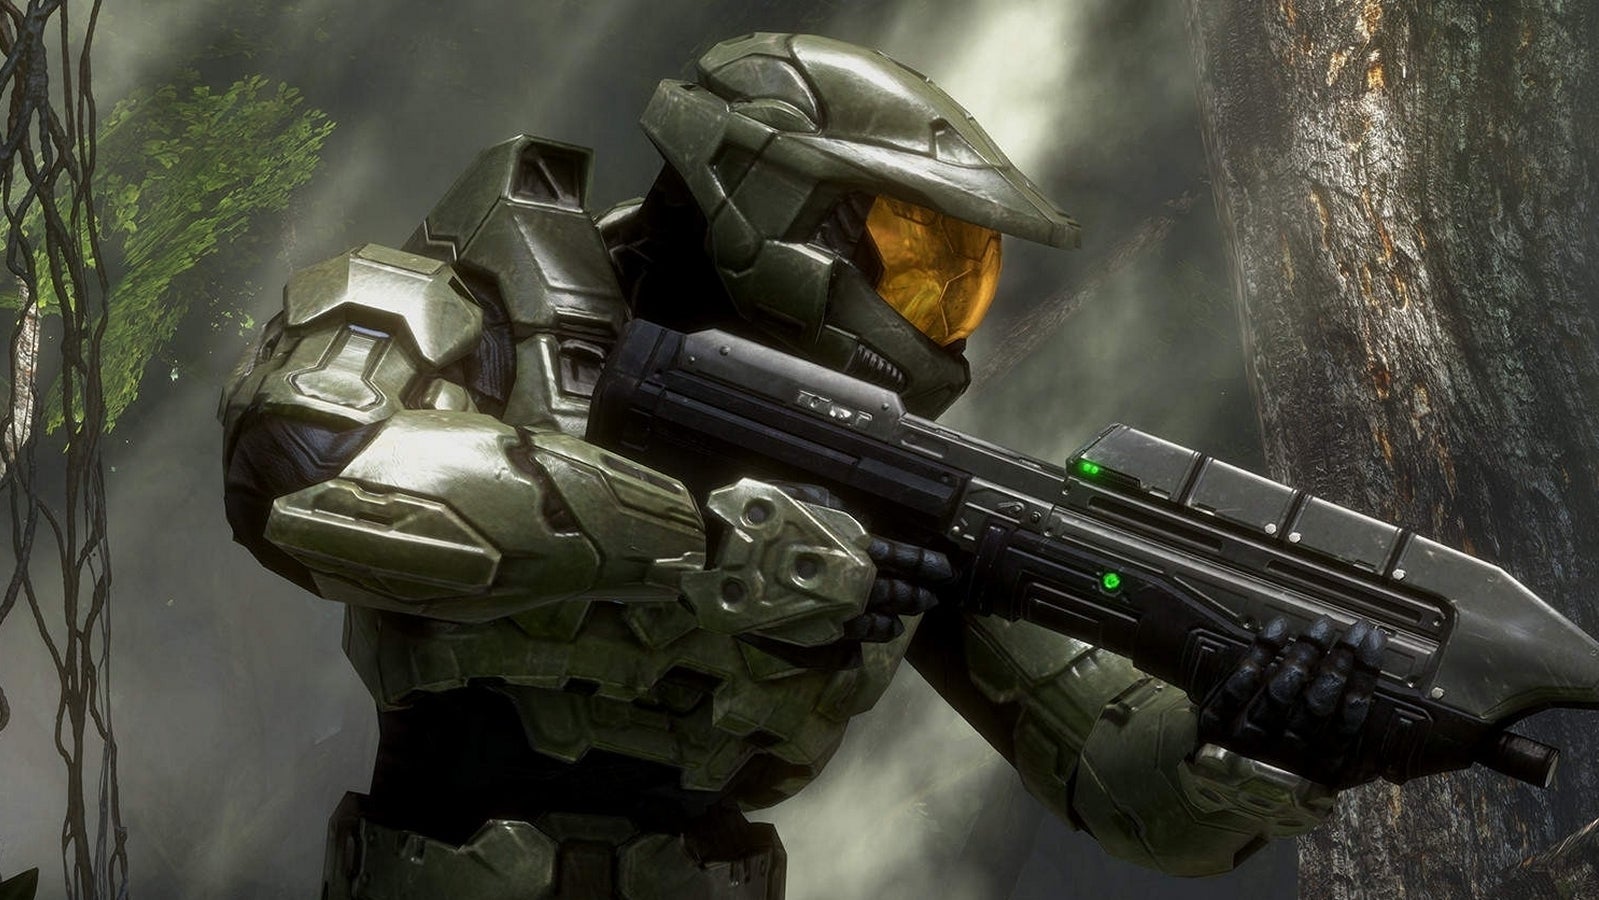 Bilder zu Halo 3 erscheint nächste Woche für PC